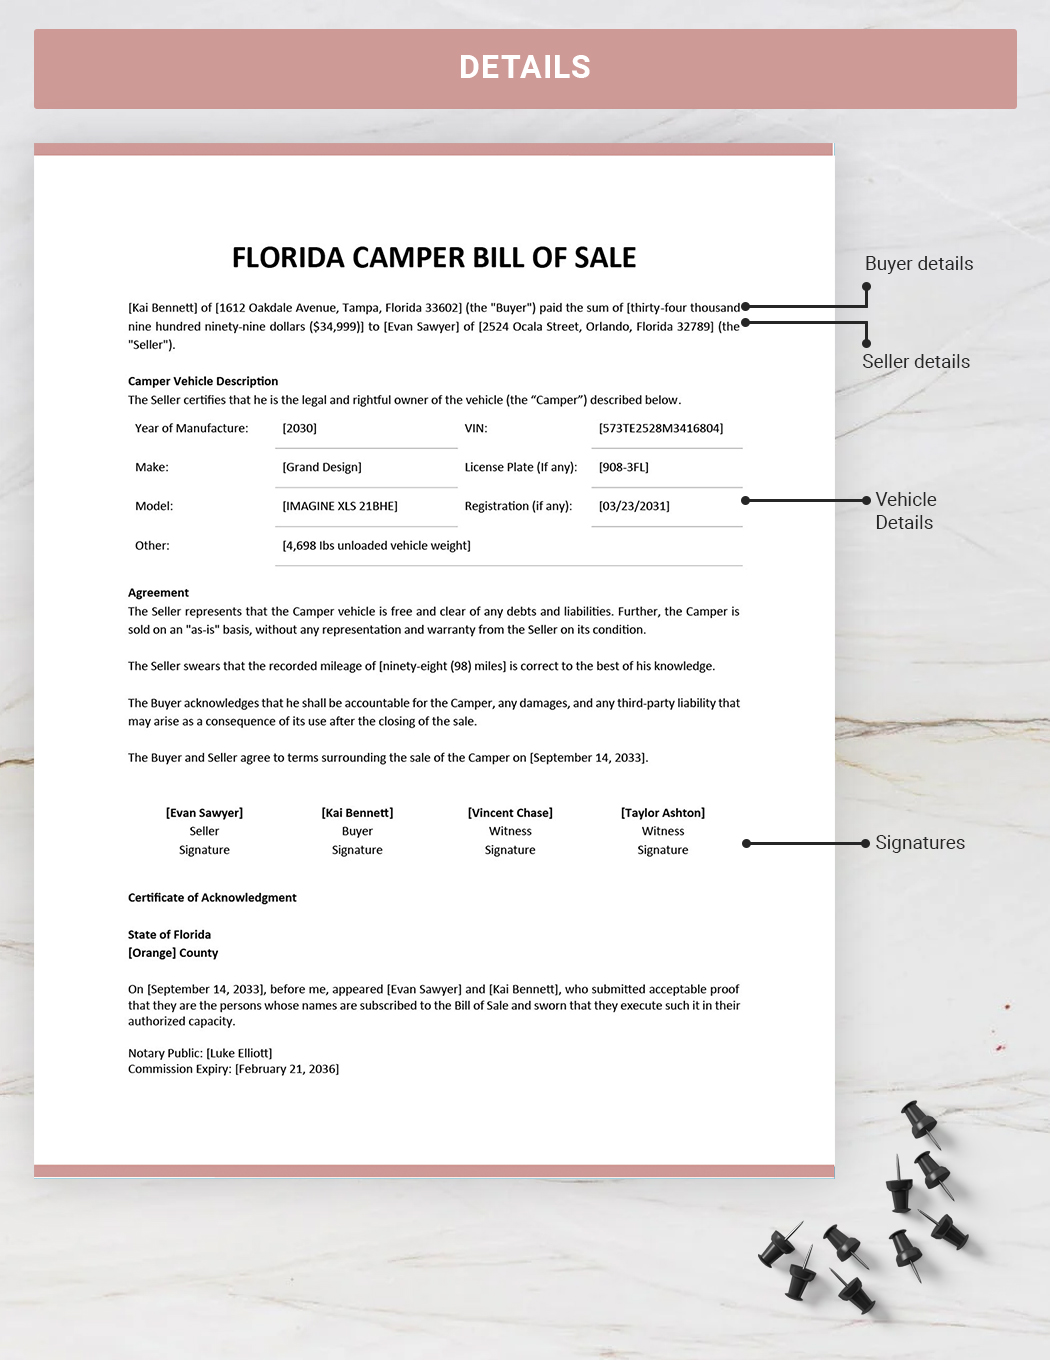 Florida Camper Bill of Sale Template